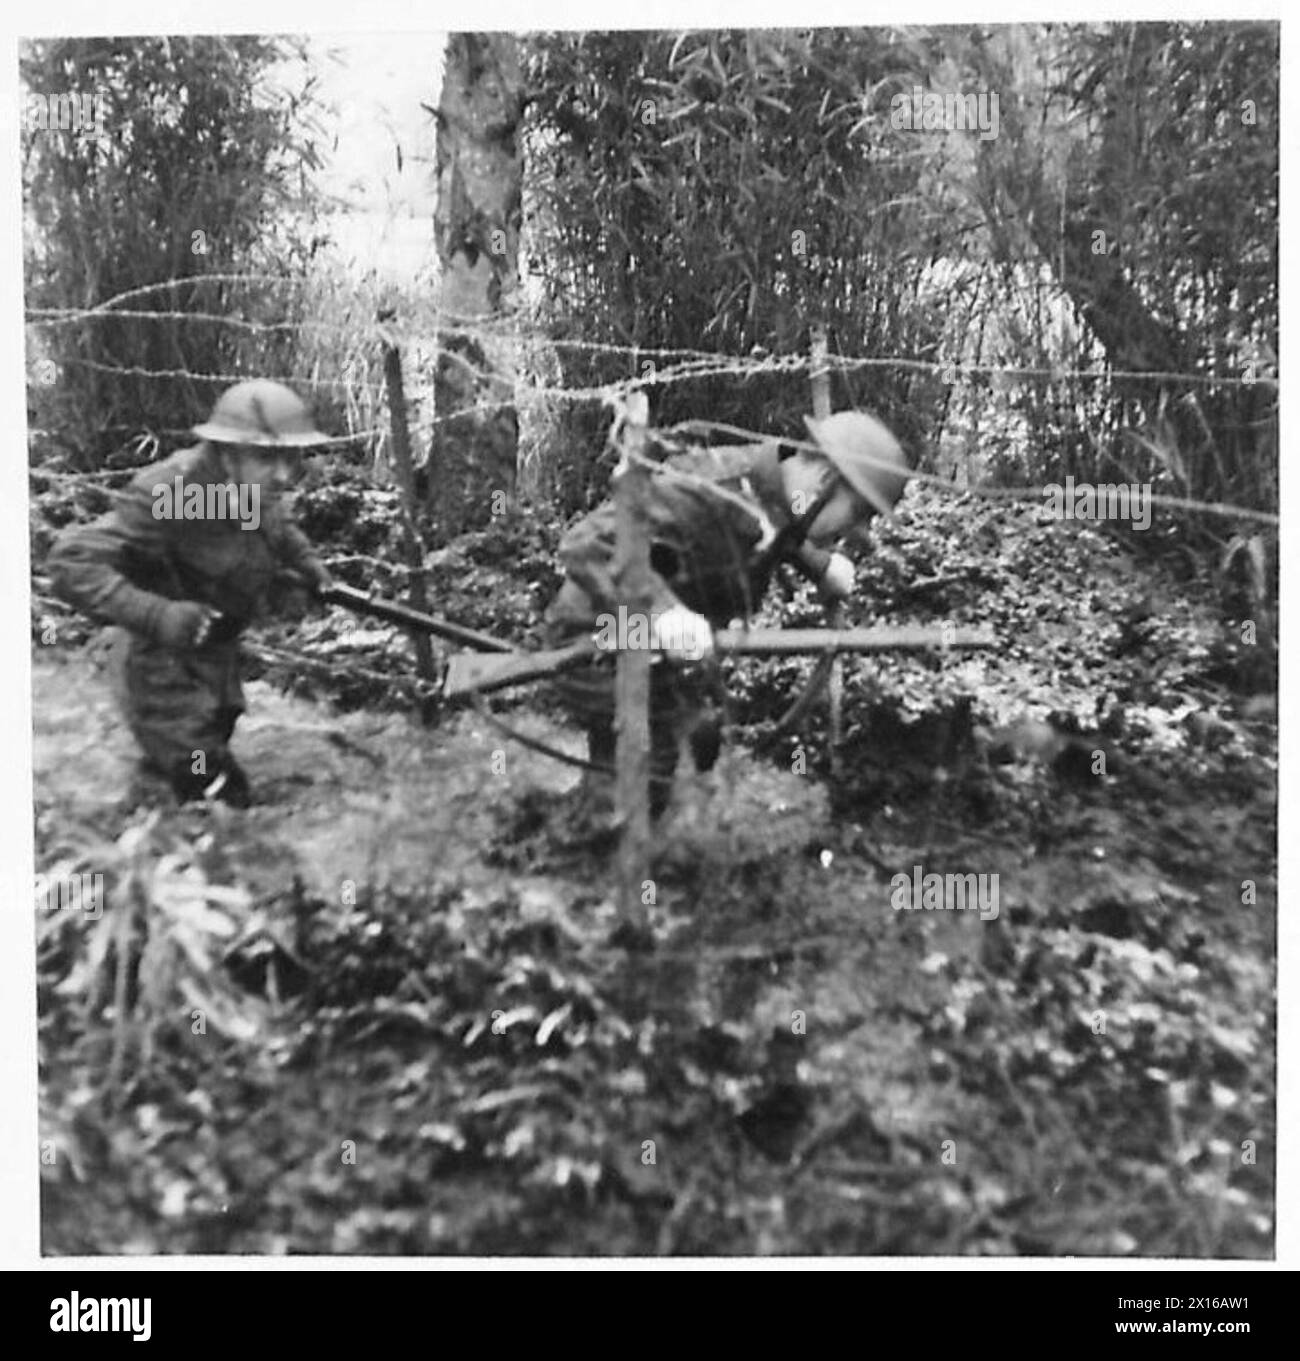 SCHOOL OF BATTLE DRILL - Soldaten waten einen kleinen Fluss mit der Abdeckung, die er als Bildschirm gegen feindliche Beobachtungen der British Army bereitstellt Stockfoto